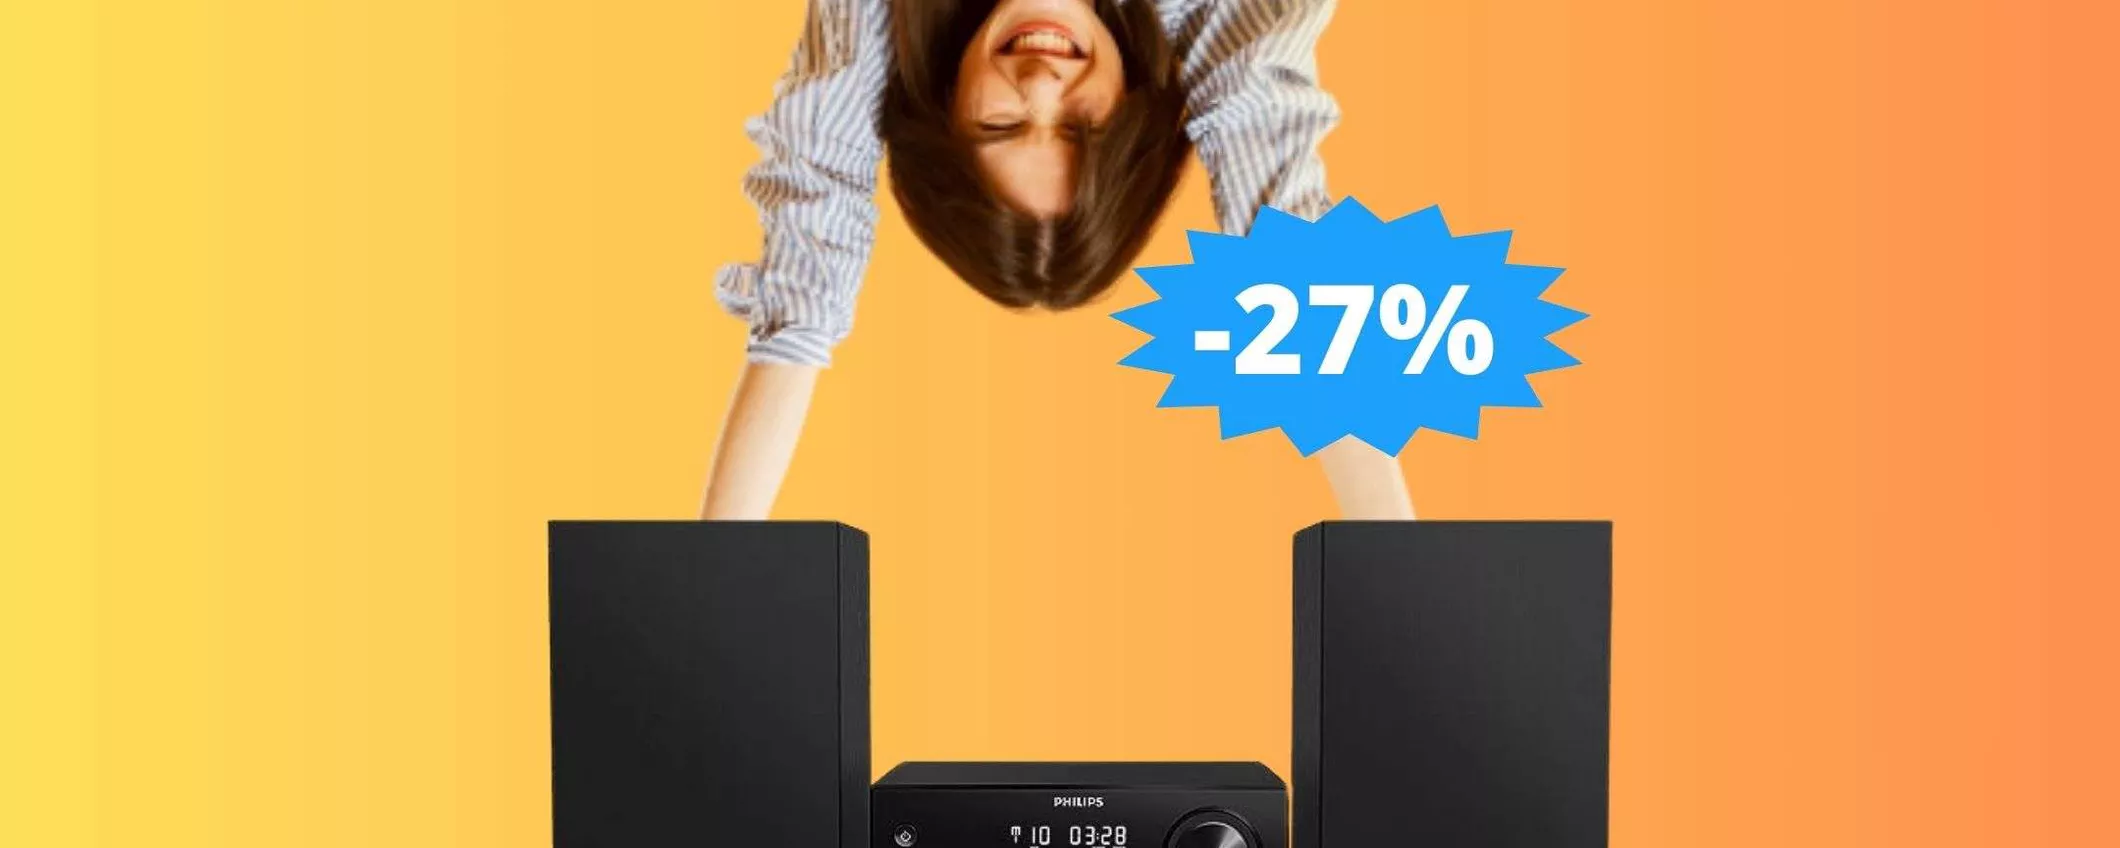 Impianto stereo Philips: AFFARE imperdibile su Amazon (-27%)